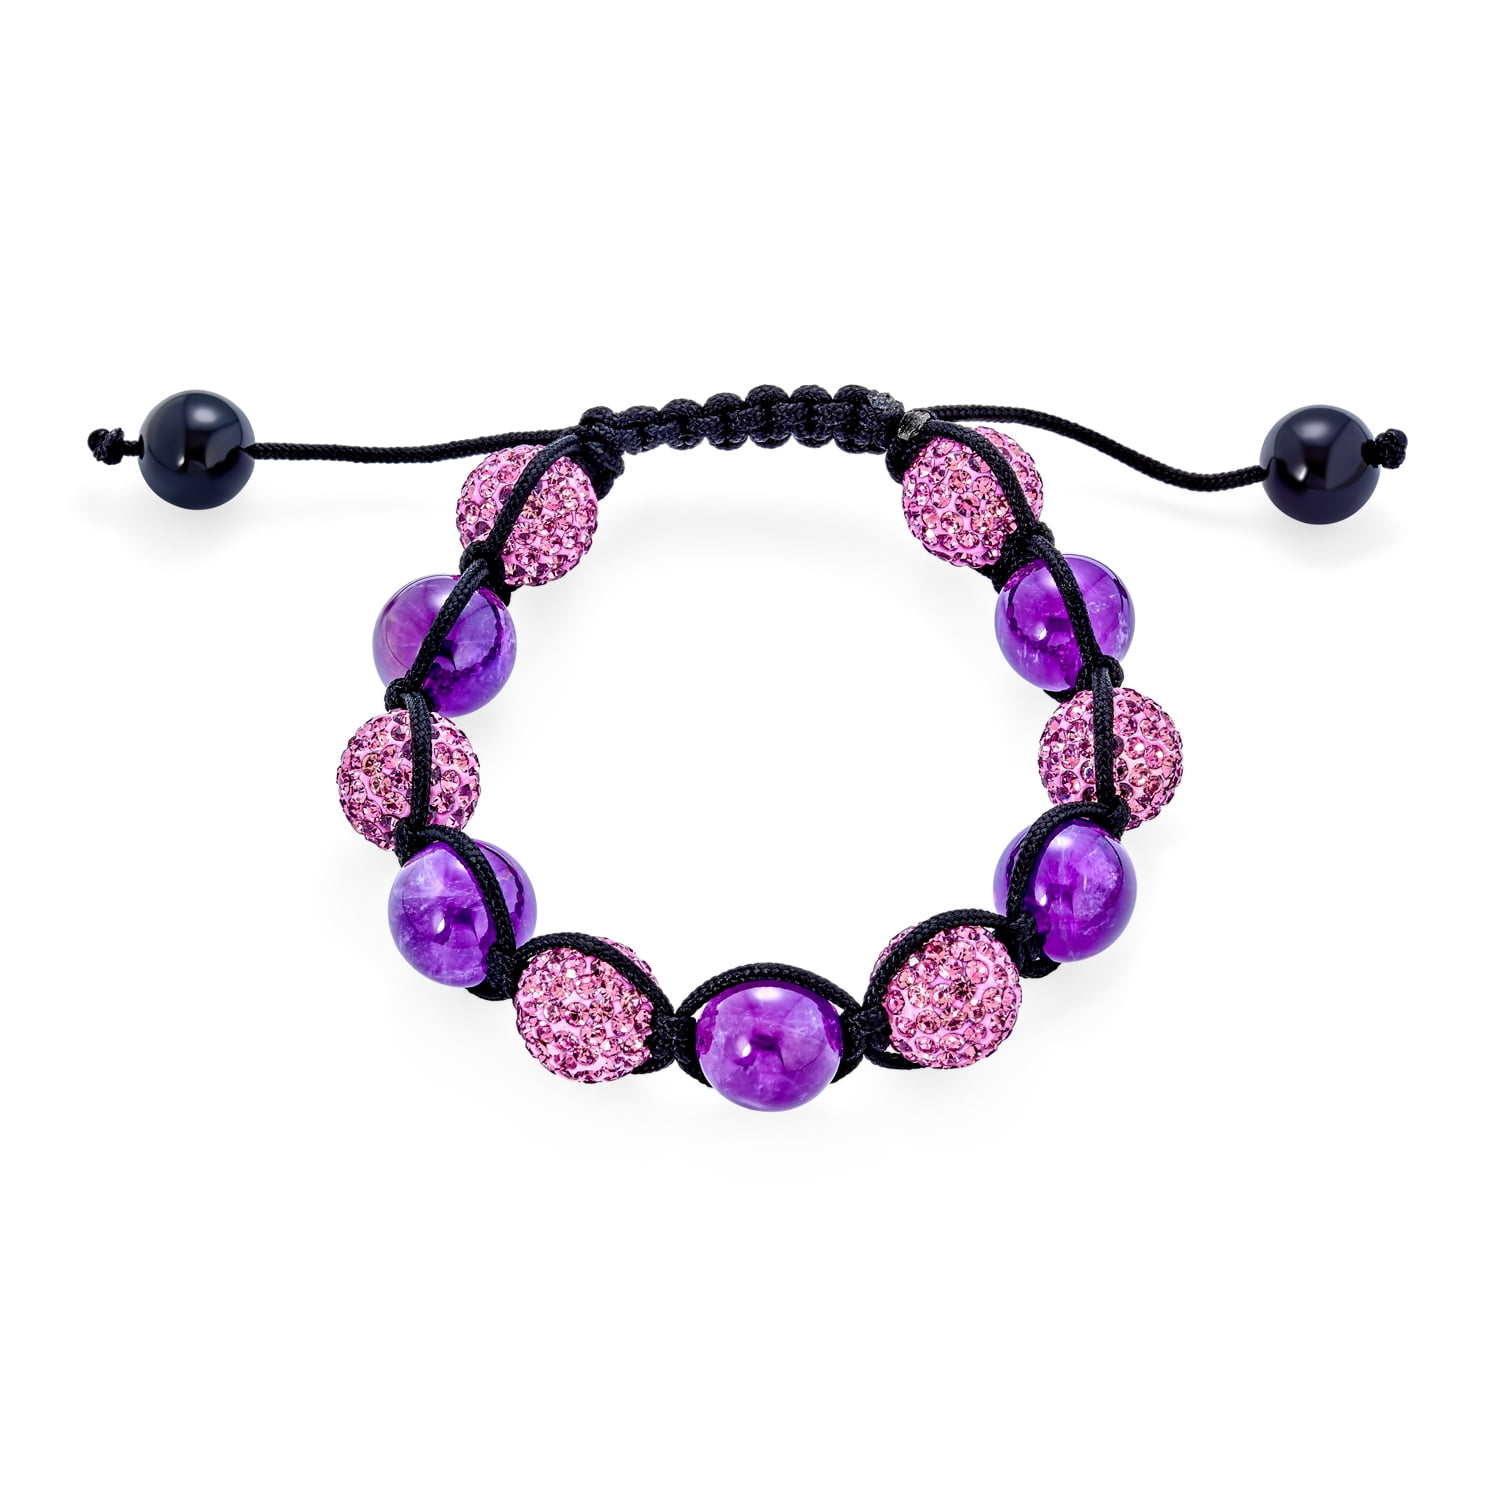 Rose Quartz & Black Pearl Bracelet - Handmade Jewelry for Women